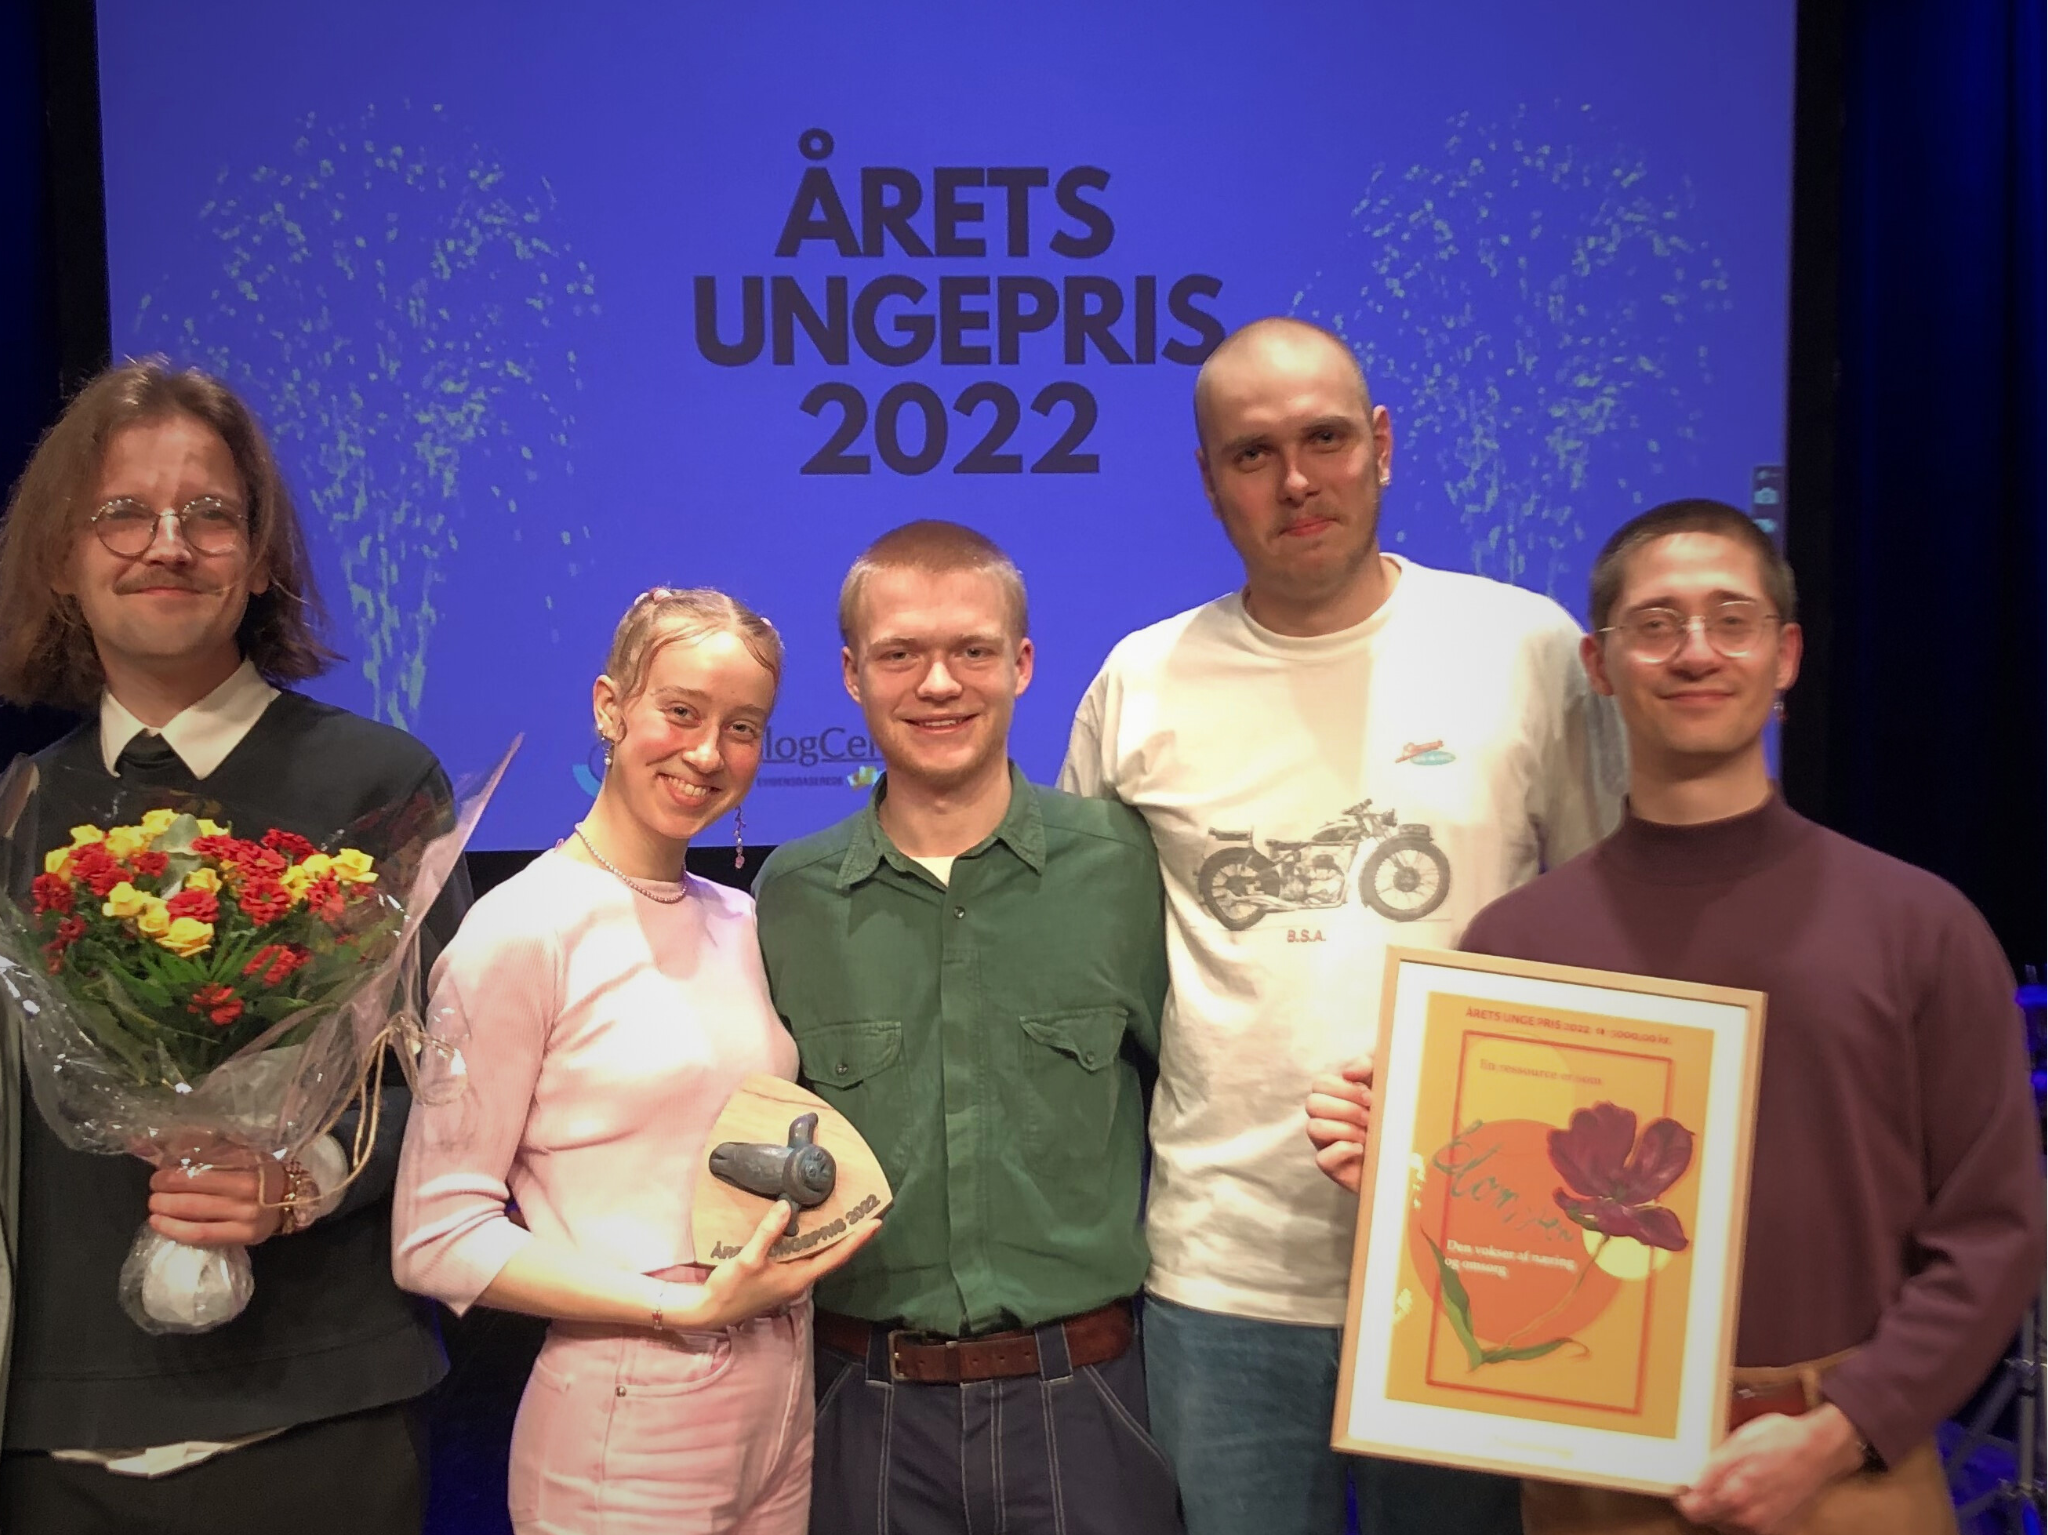 Drivhusets Crew. Vinderne af Årets Ungepris 2022. Foto Eva mikkelsen